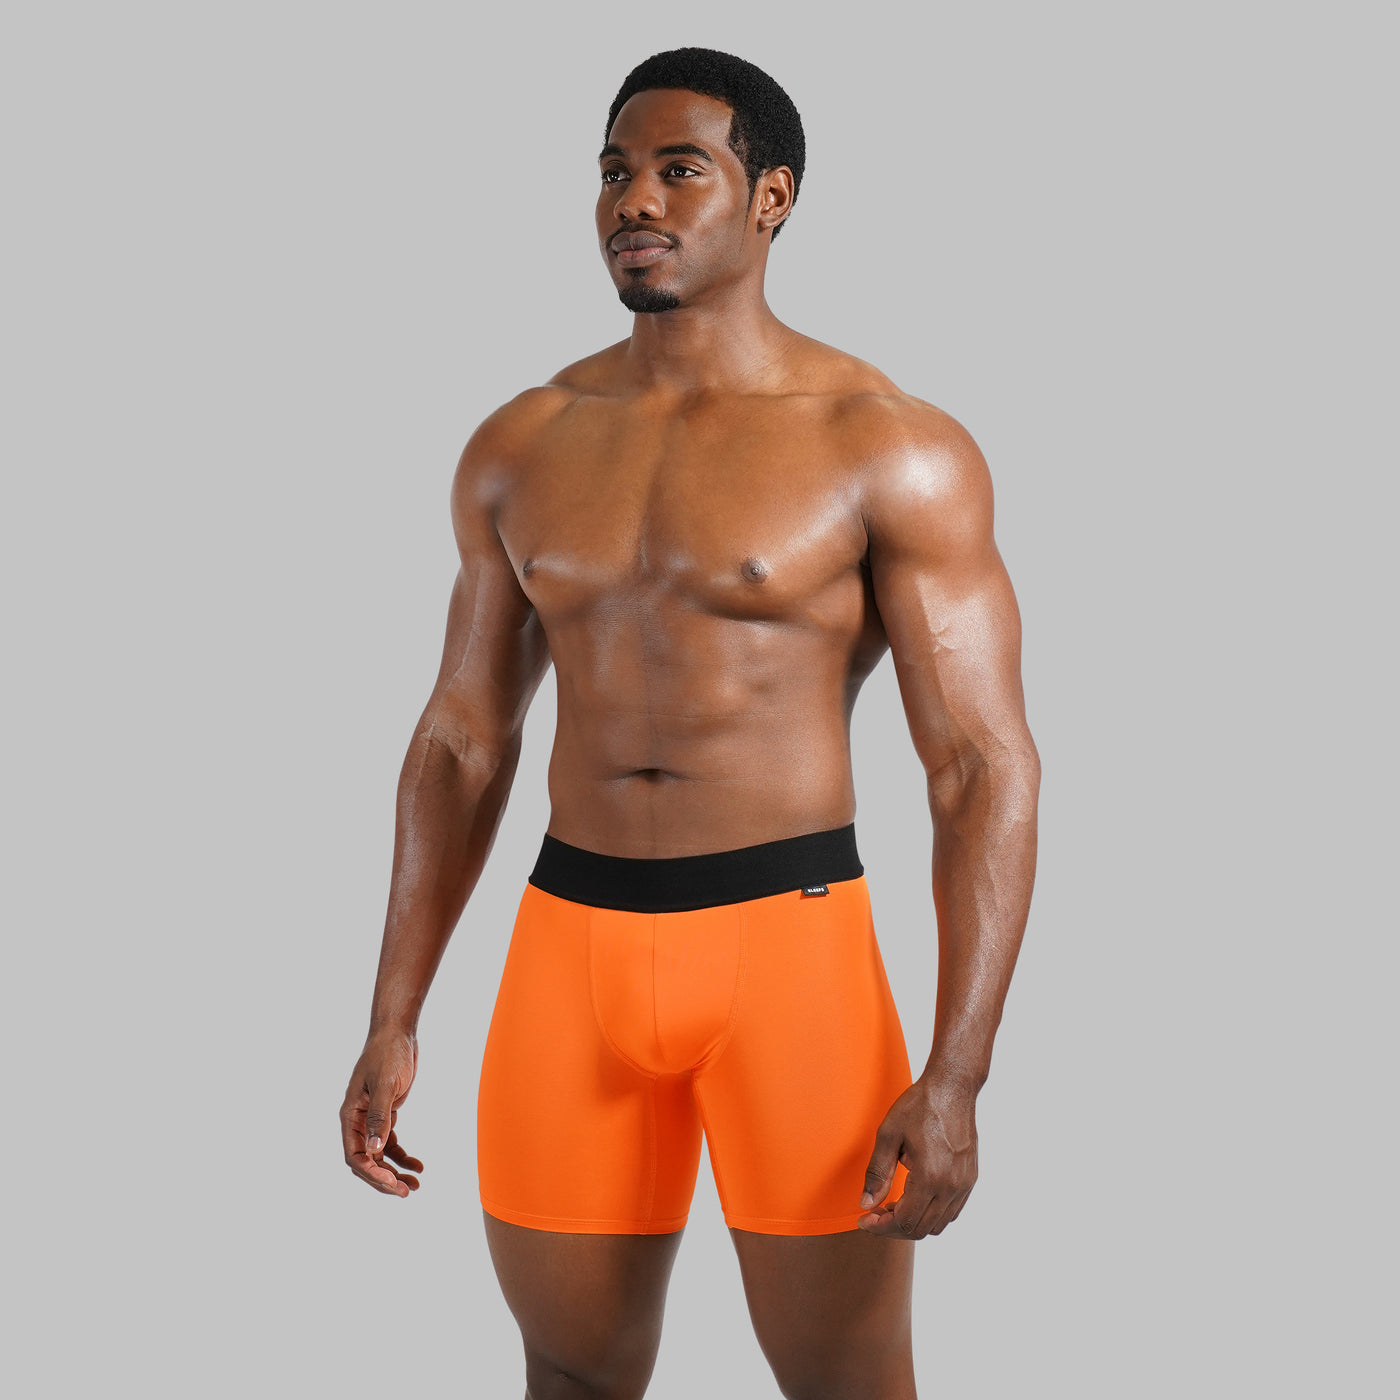 Hue Orange Men's Underwear